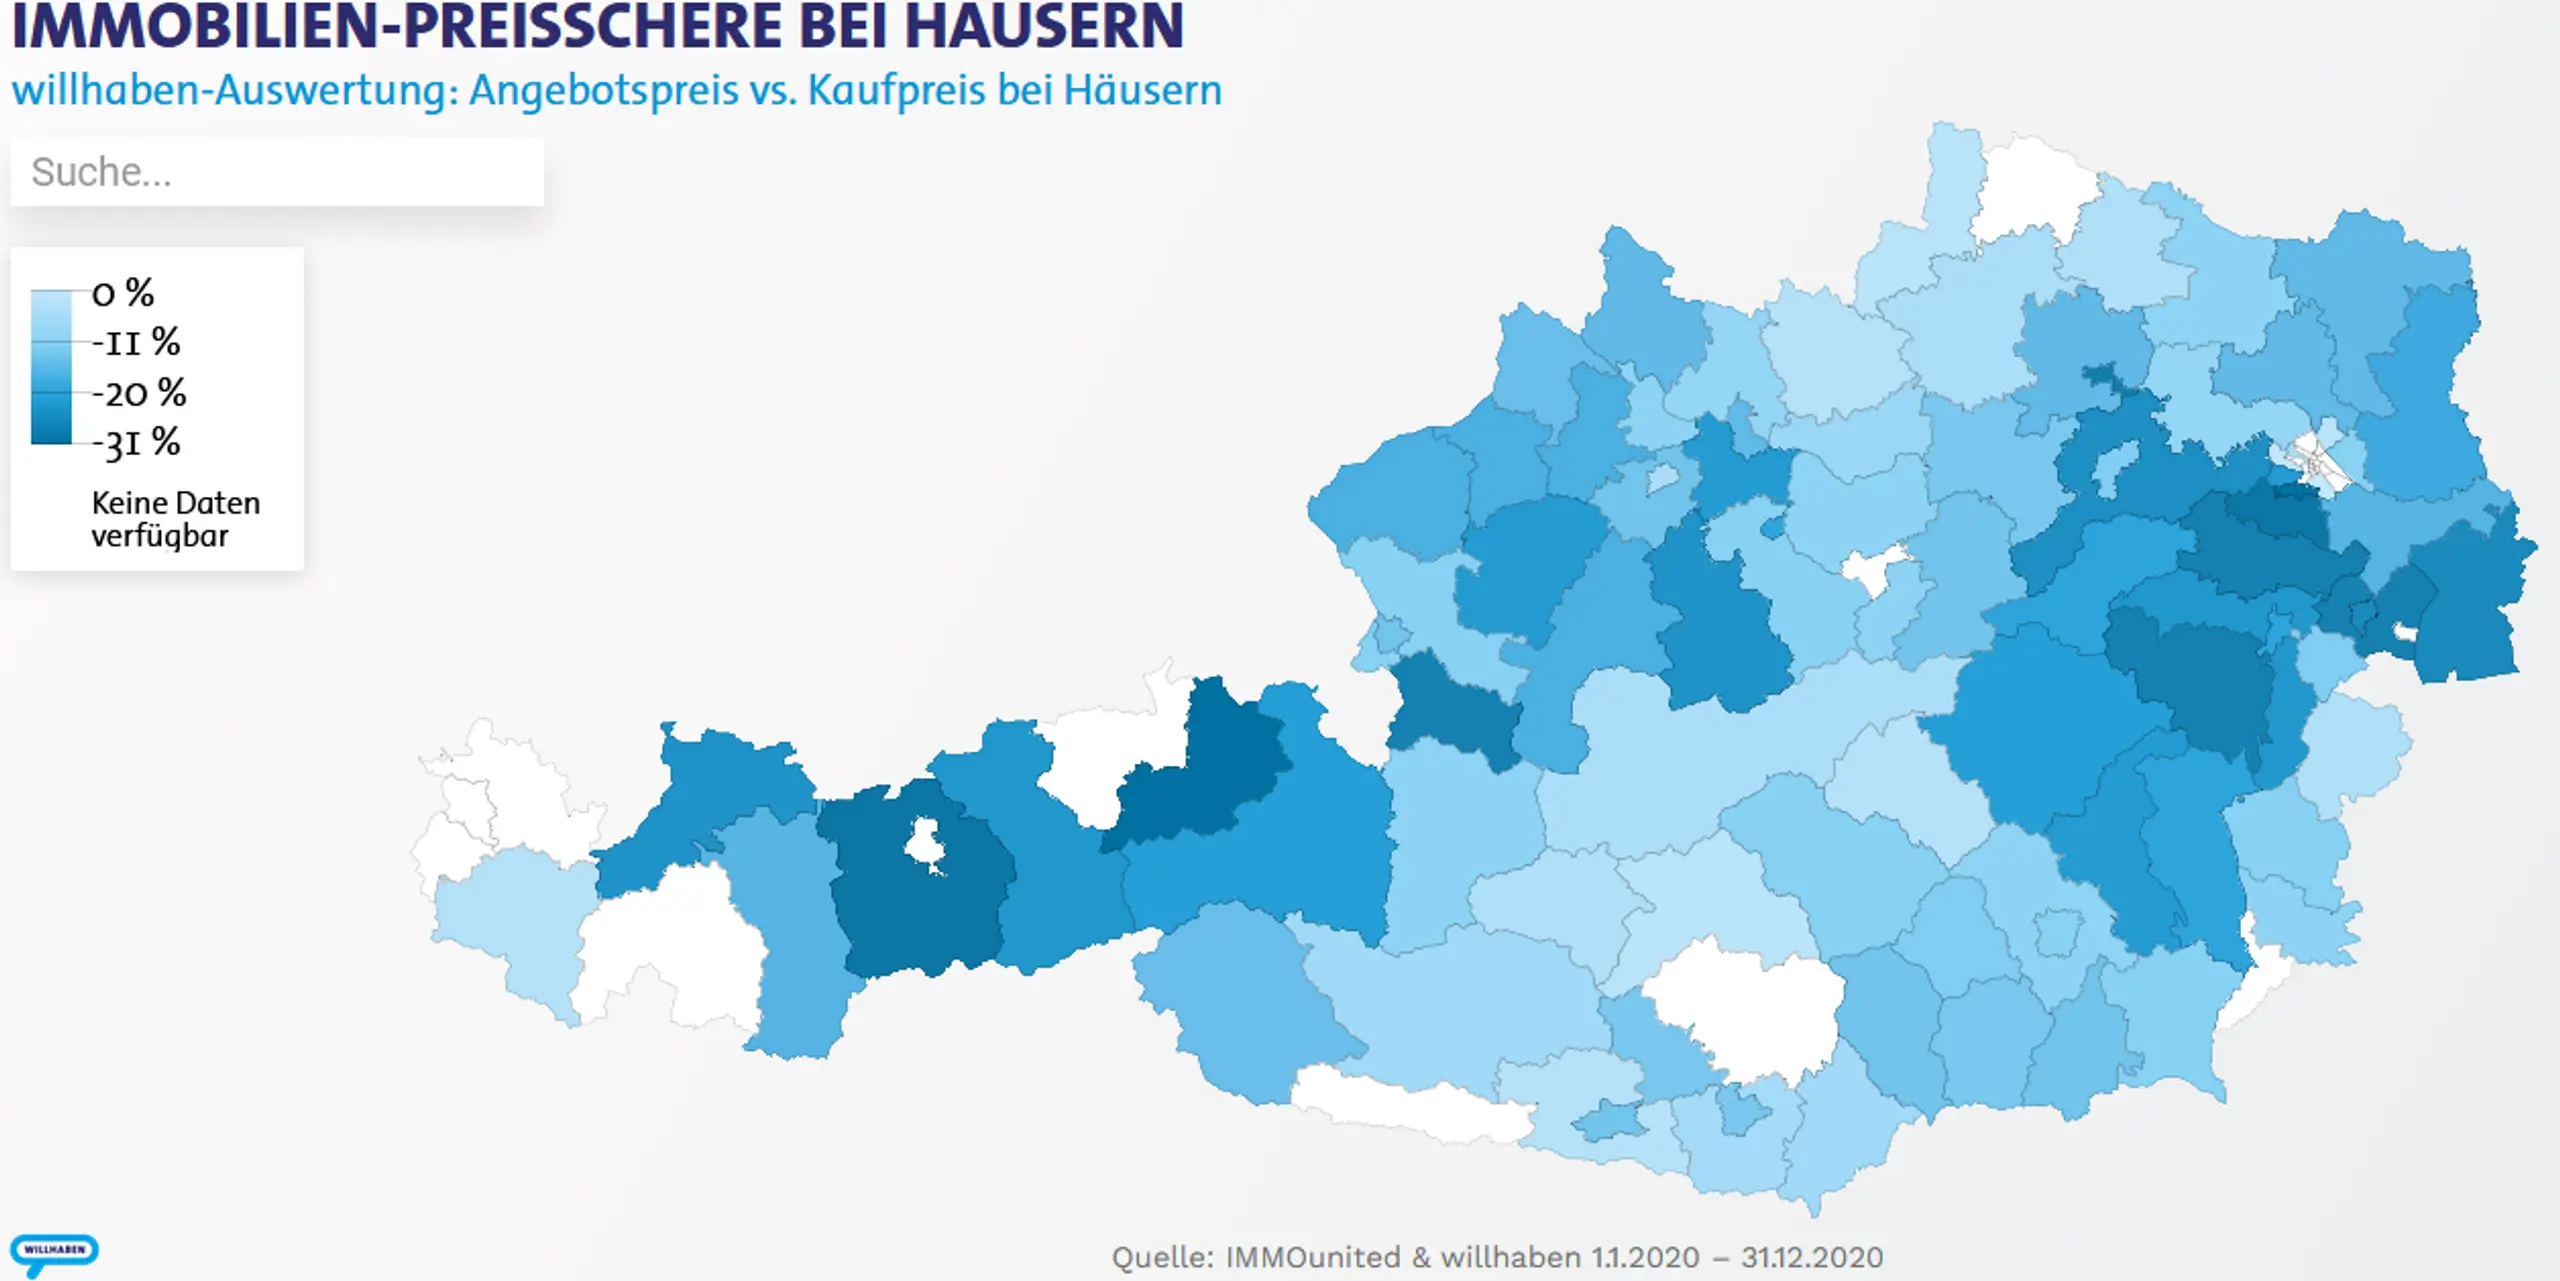 Angebotspreis versus Kaufpreis bei Häusern in Österreich